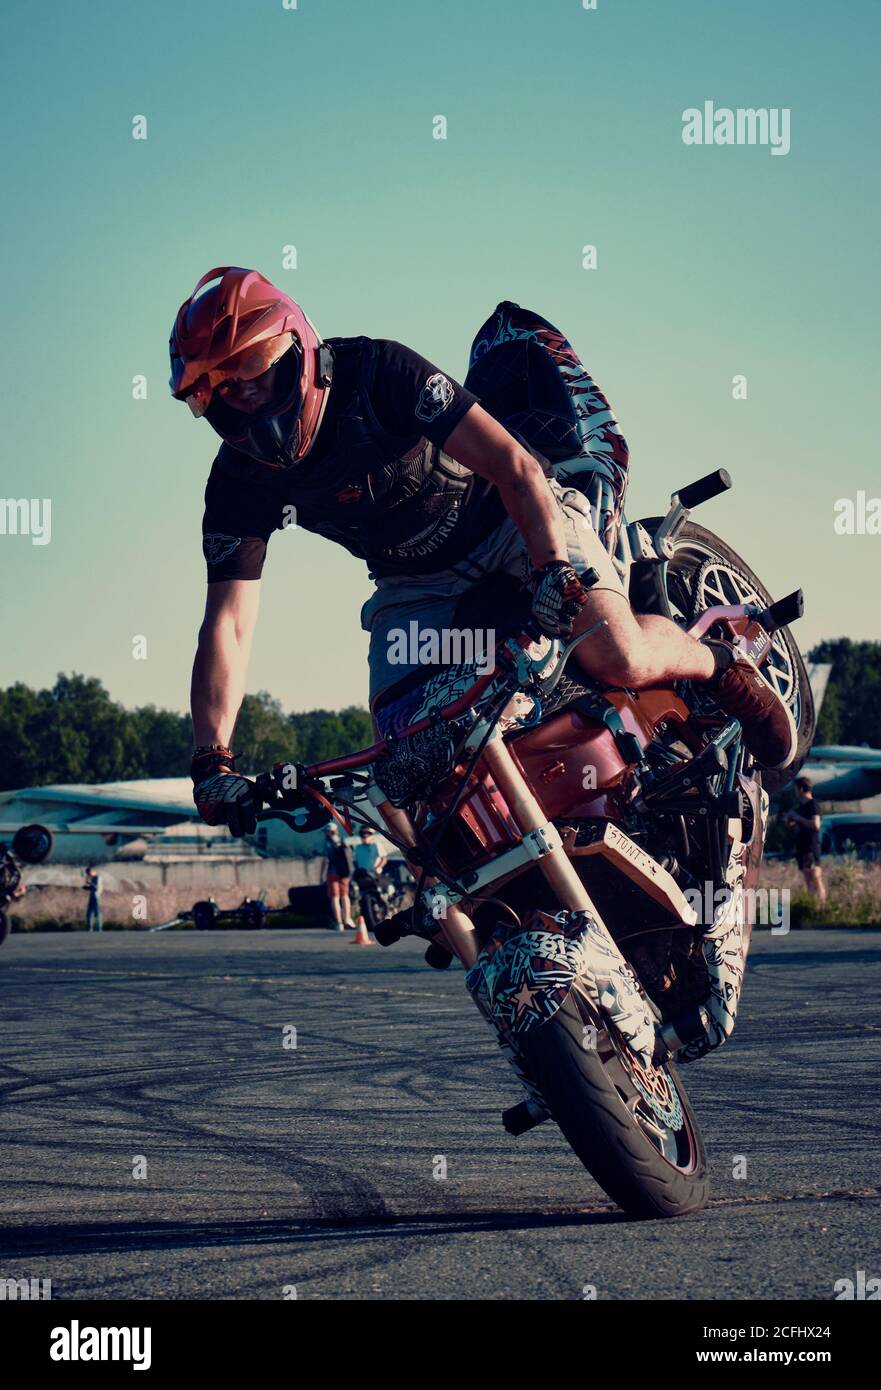 Moscou, Russie - septembre 2020 : moto rider fait un acrobatie sur sa moto. Motocycliste faisant de l'arrêt un stunt difficile et dangereux sur sa moto Banque D'Images